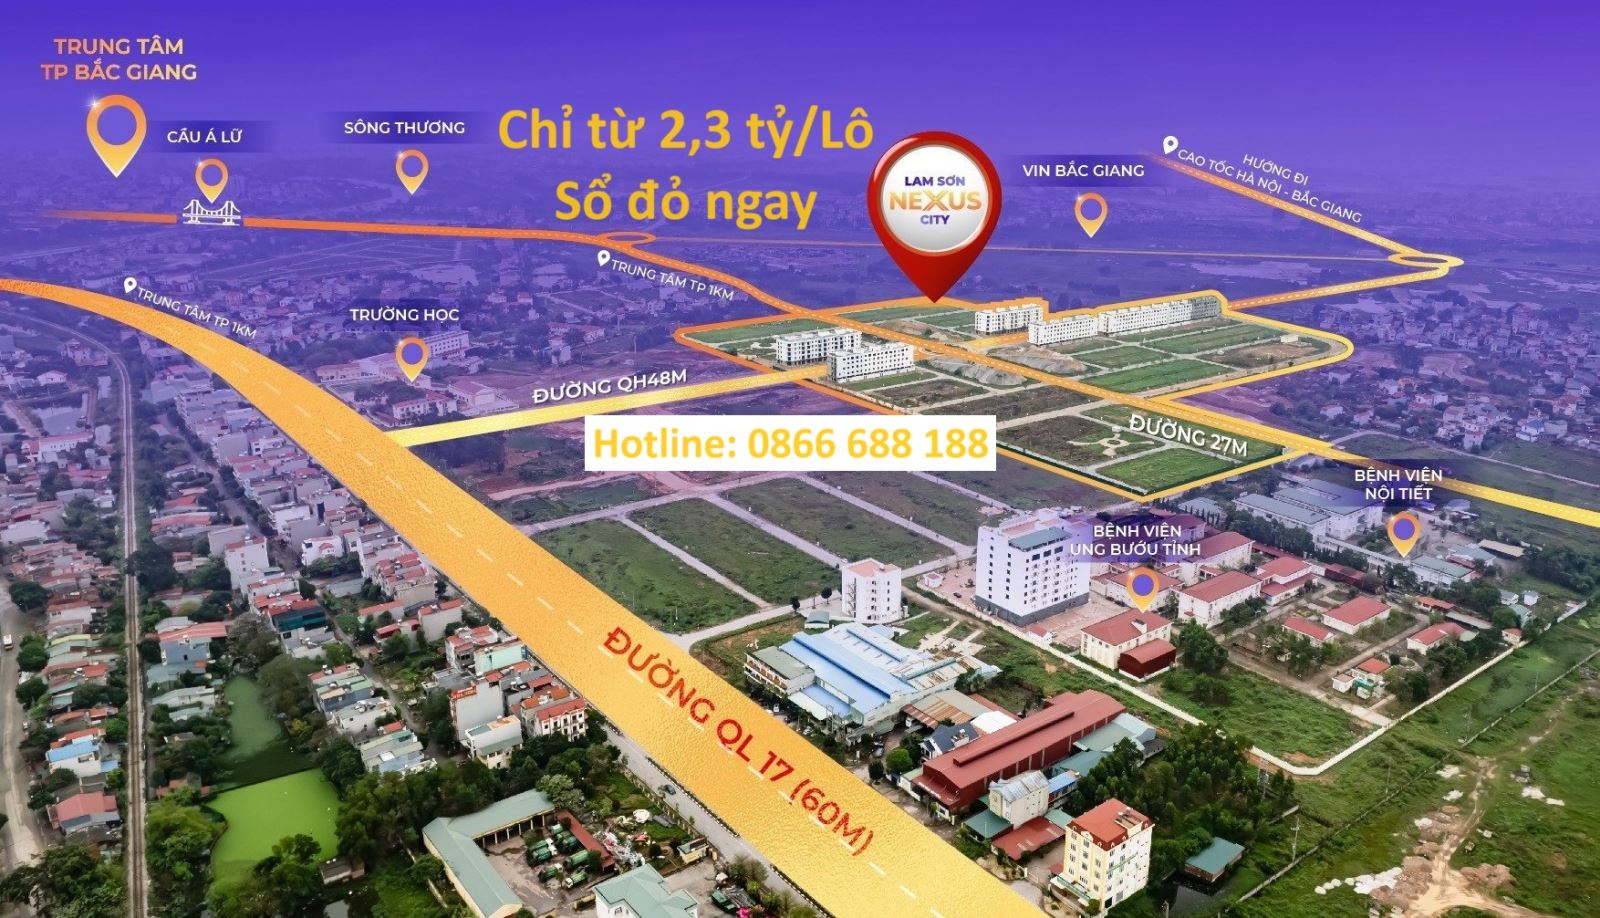 Mở Bán Đất Nền Lam Sơn Nexus City TP Bắc Giang Chỉ từ 2,3 Tỷ/lô sổ đỏ ngay